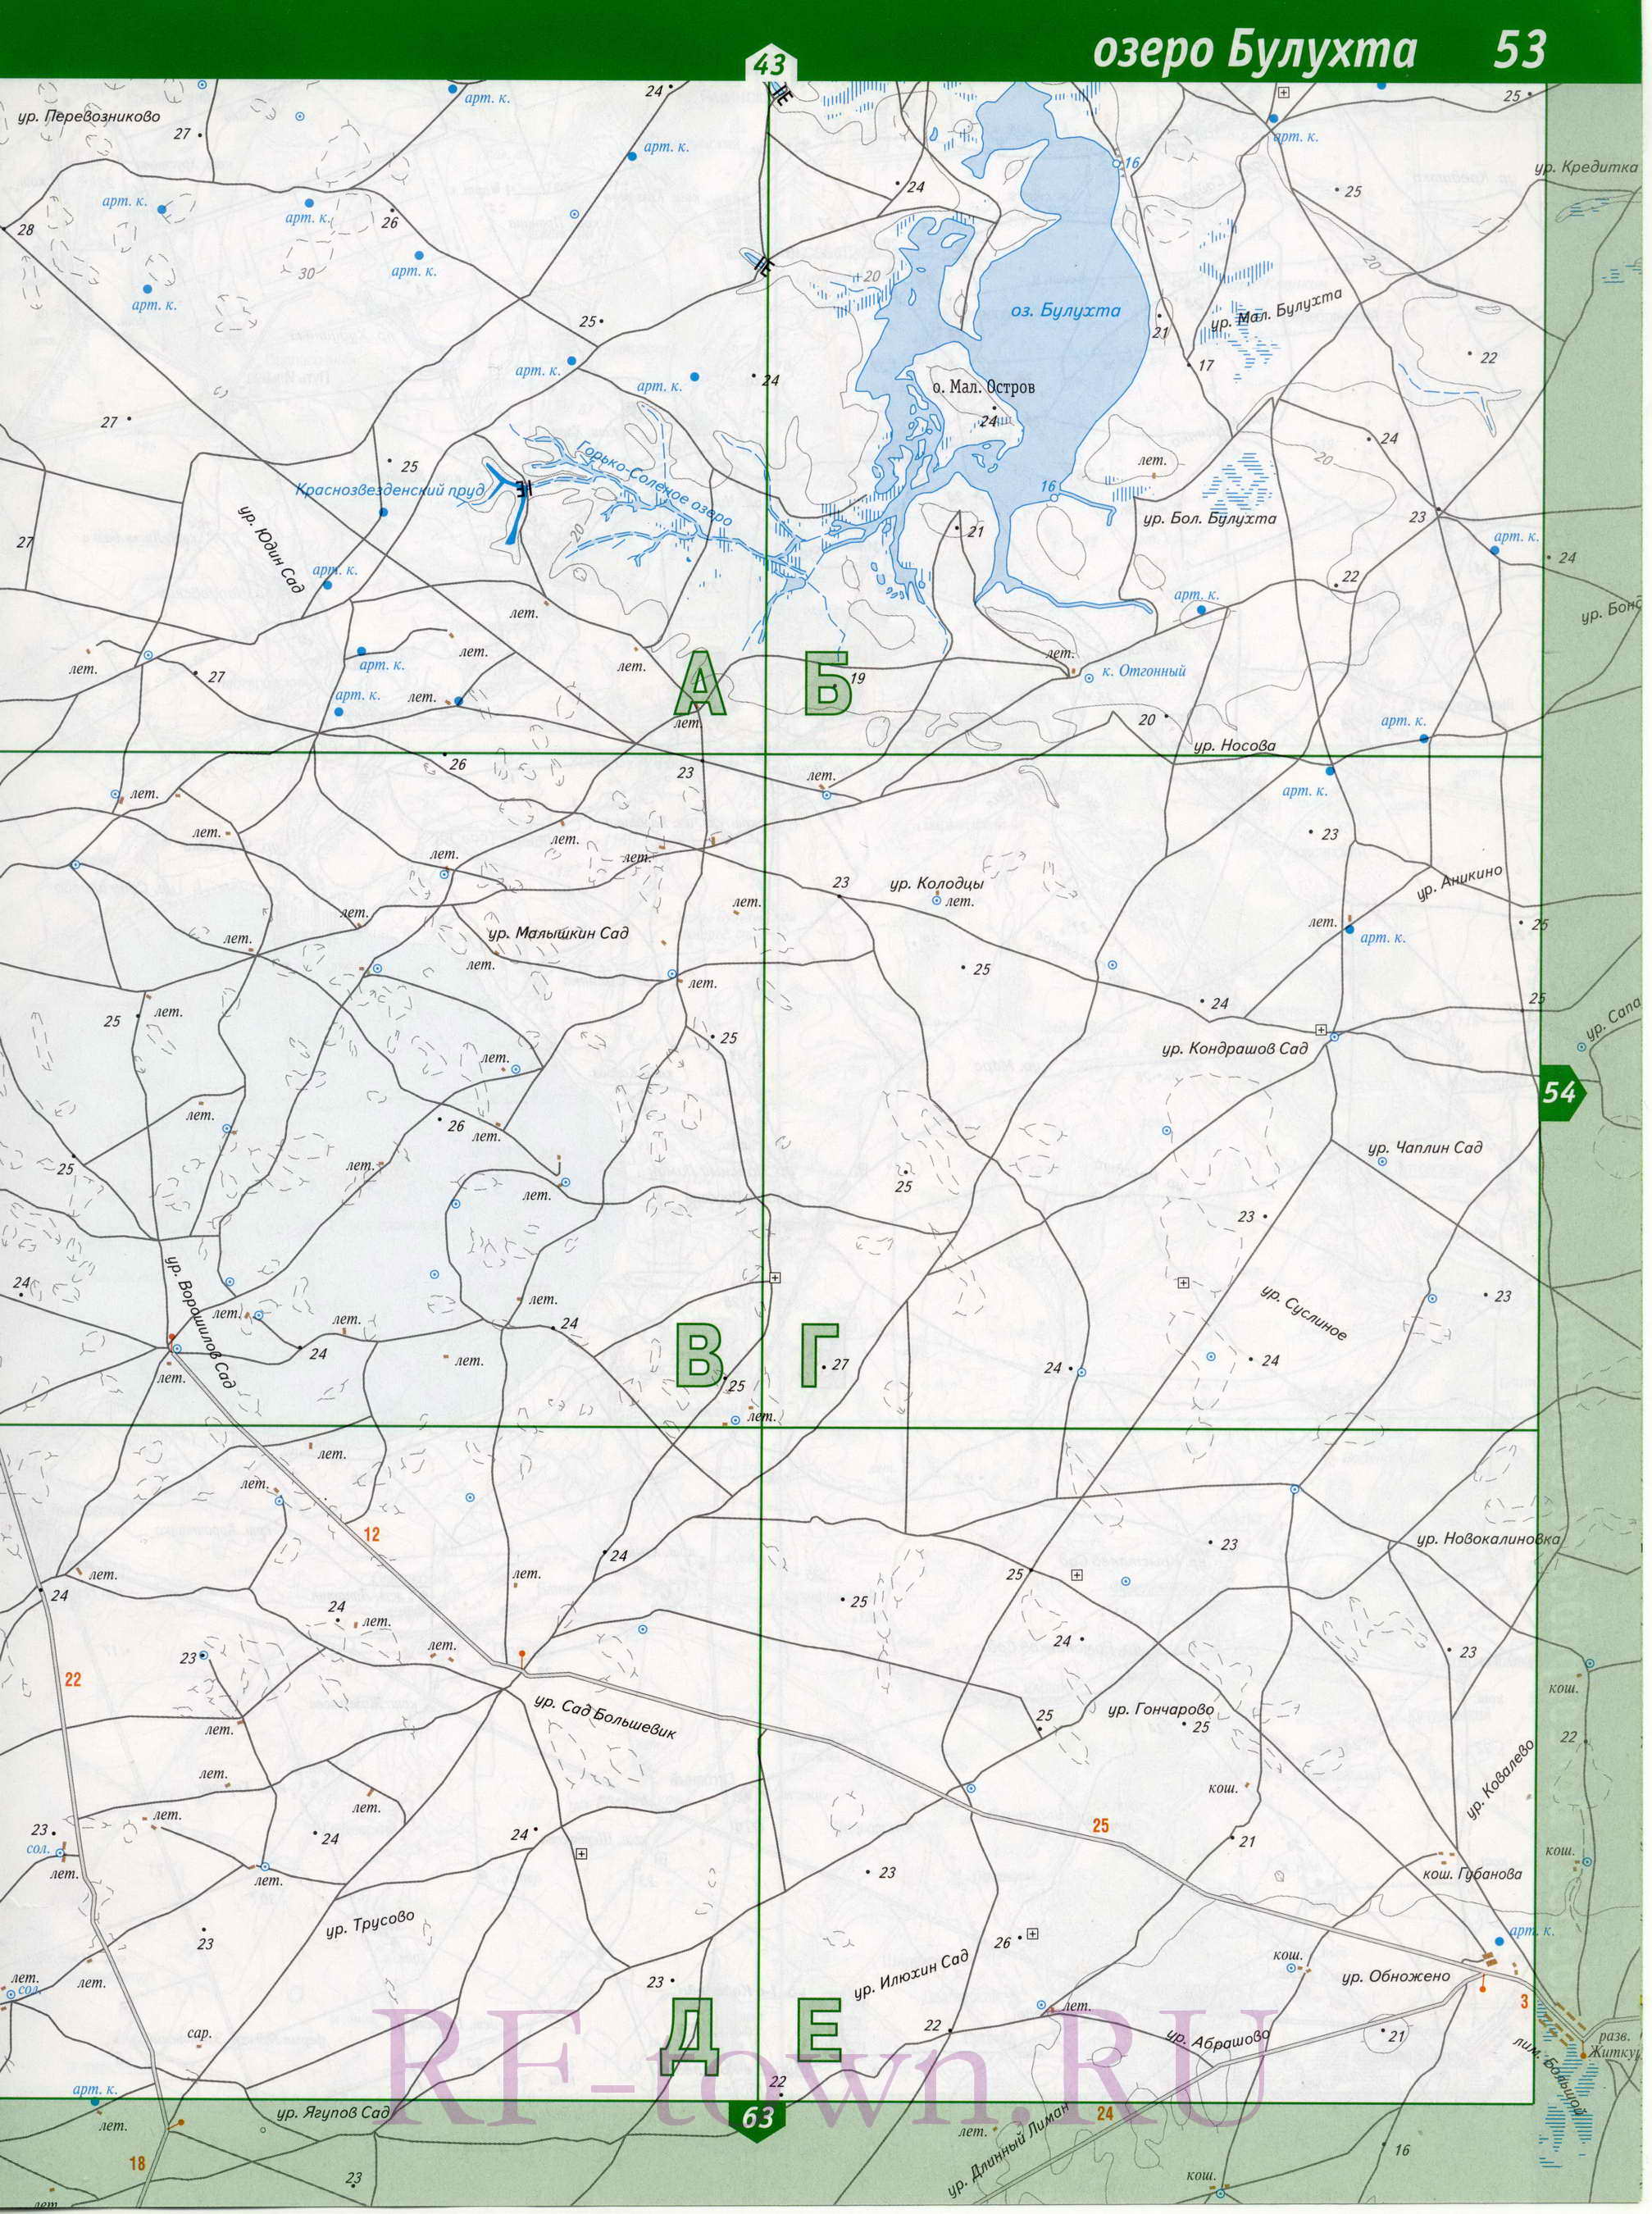 Знаменск карта. Карта закрытого территориального образования Знаменск, A1 - 